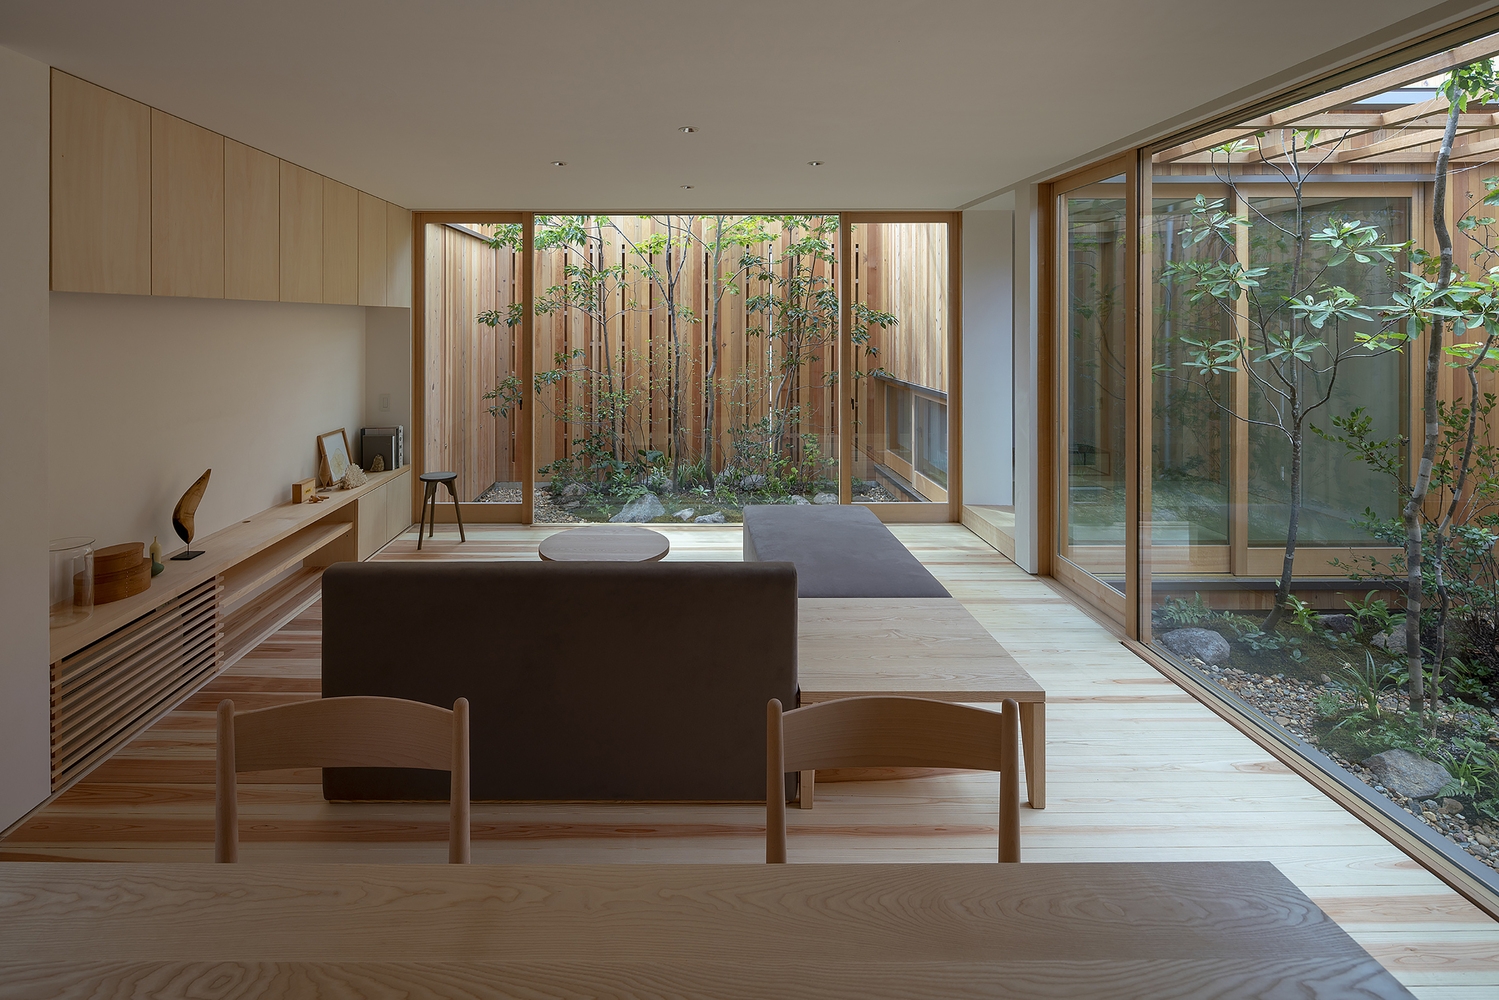 Moderný japonský interiér